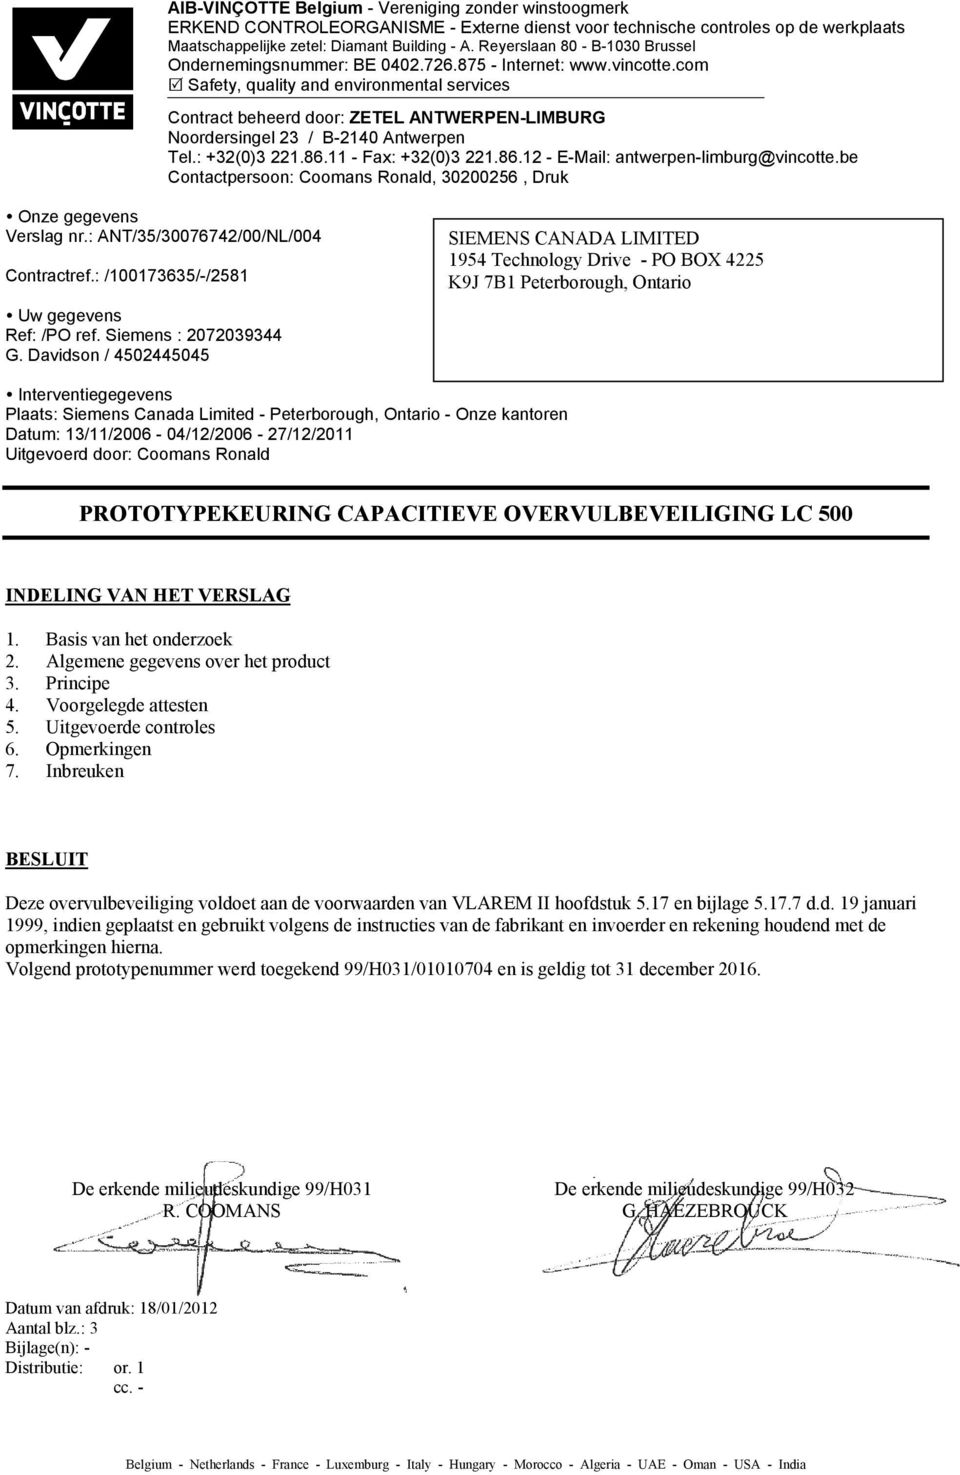 com Safety, quality and environmental services Contract beheerd door: ZETEL ANTWERPEN-LIMBURG Noordersingel 23 / B-2140 Antwerpen Tel.: +32(0)3 221.86.11 - Fax: +32(0)3 221.86.12 - E-Mail: antwerpen-limburg@vincotte.